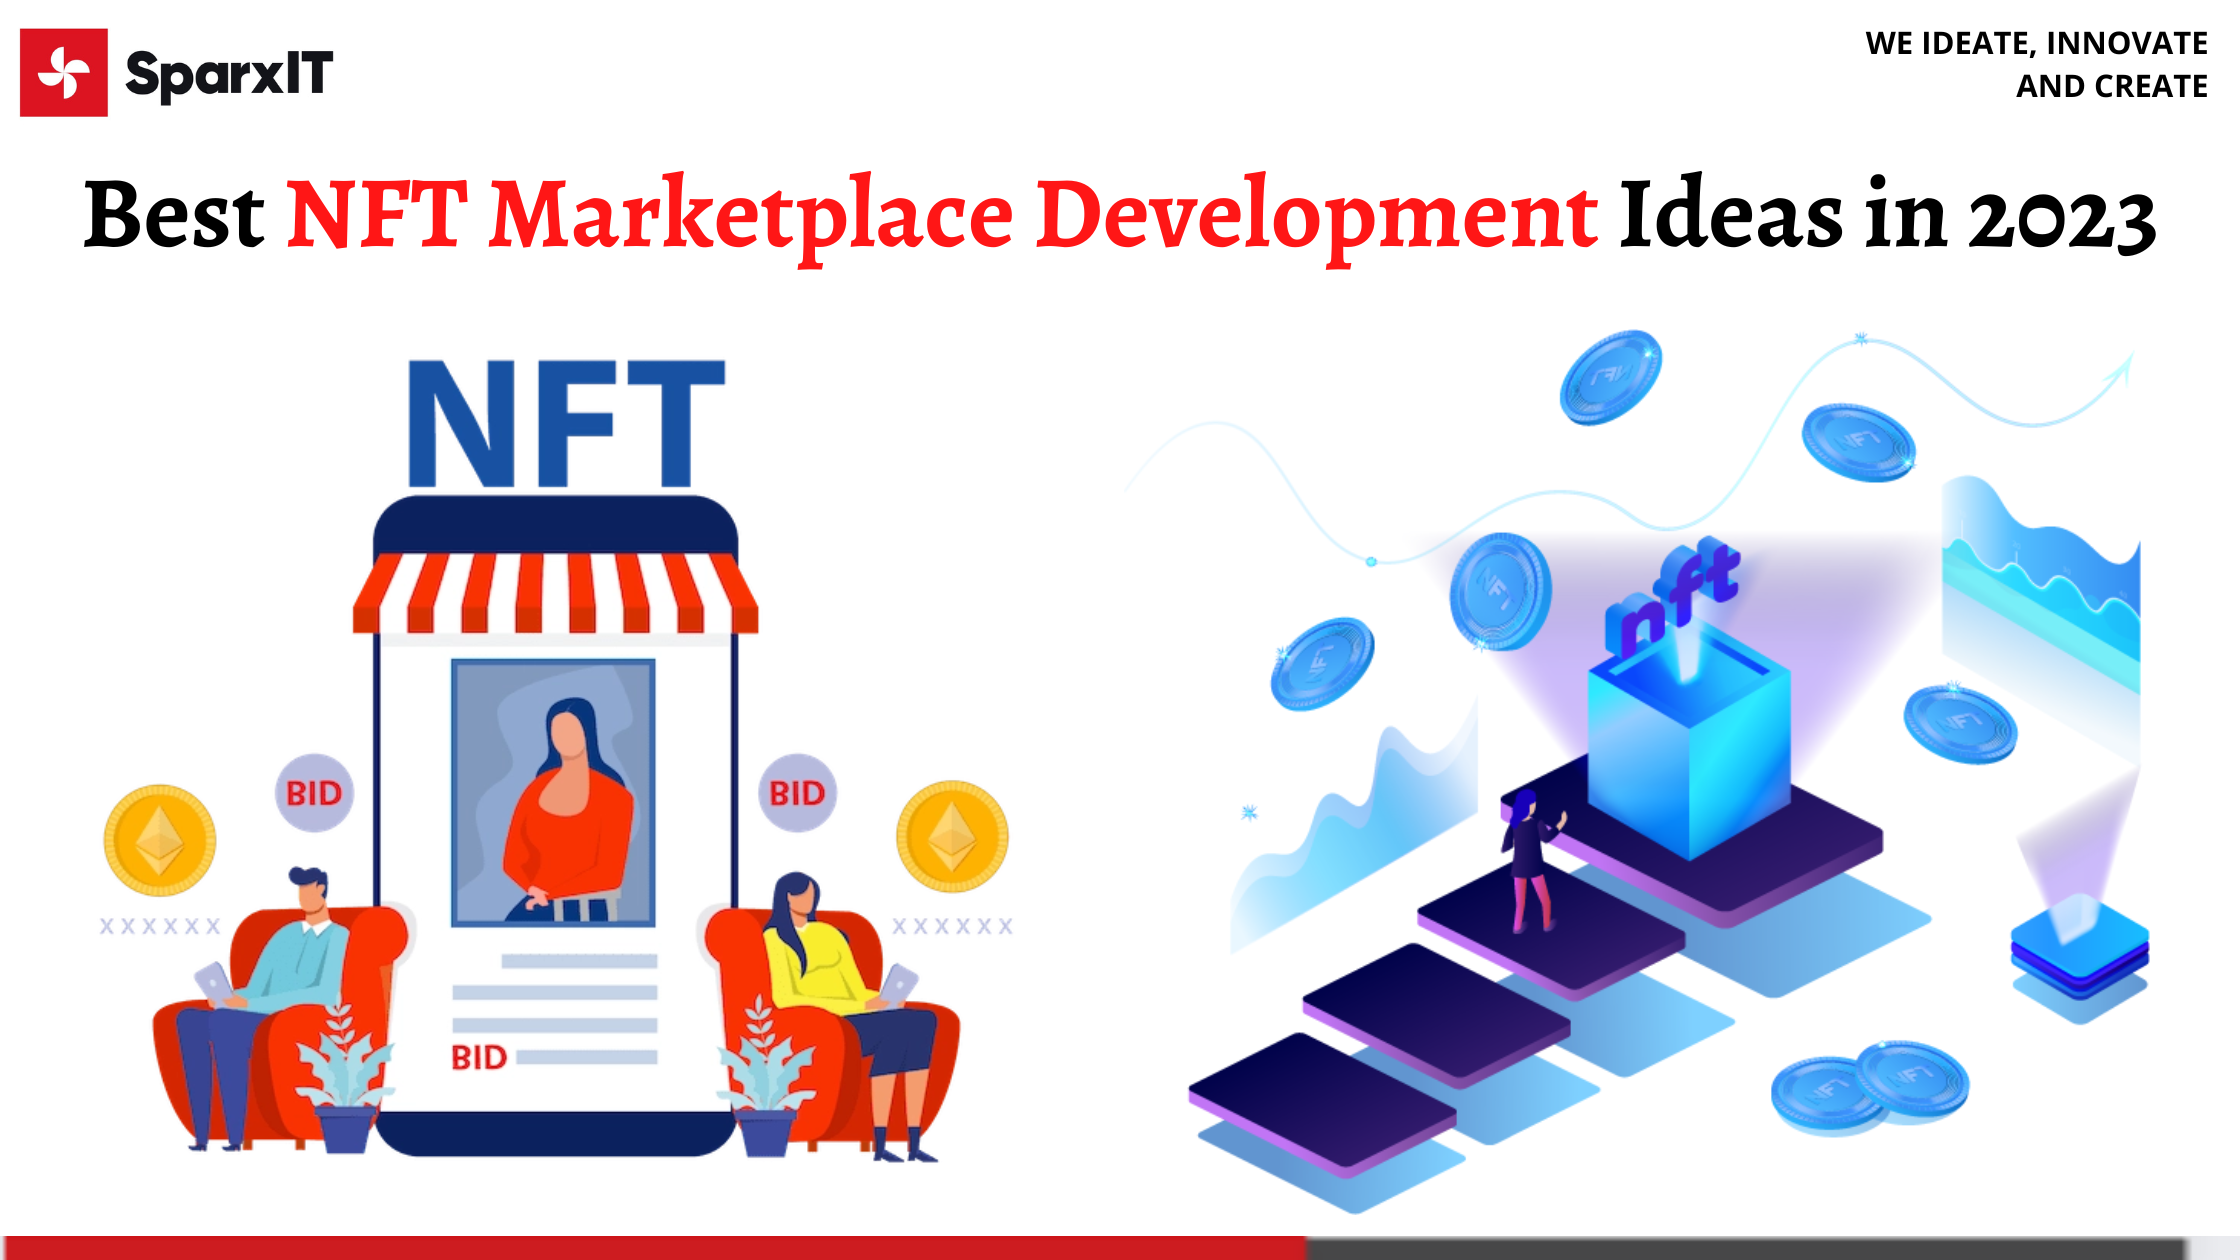 Best NFT Marketplace Development Ideas in 2023